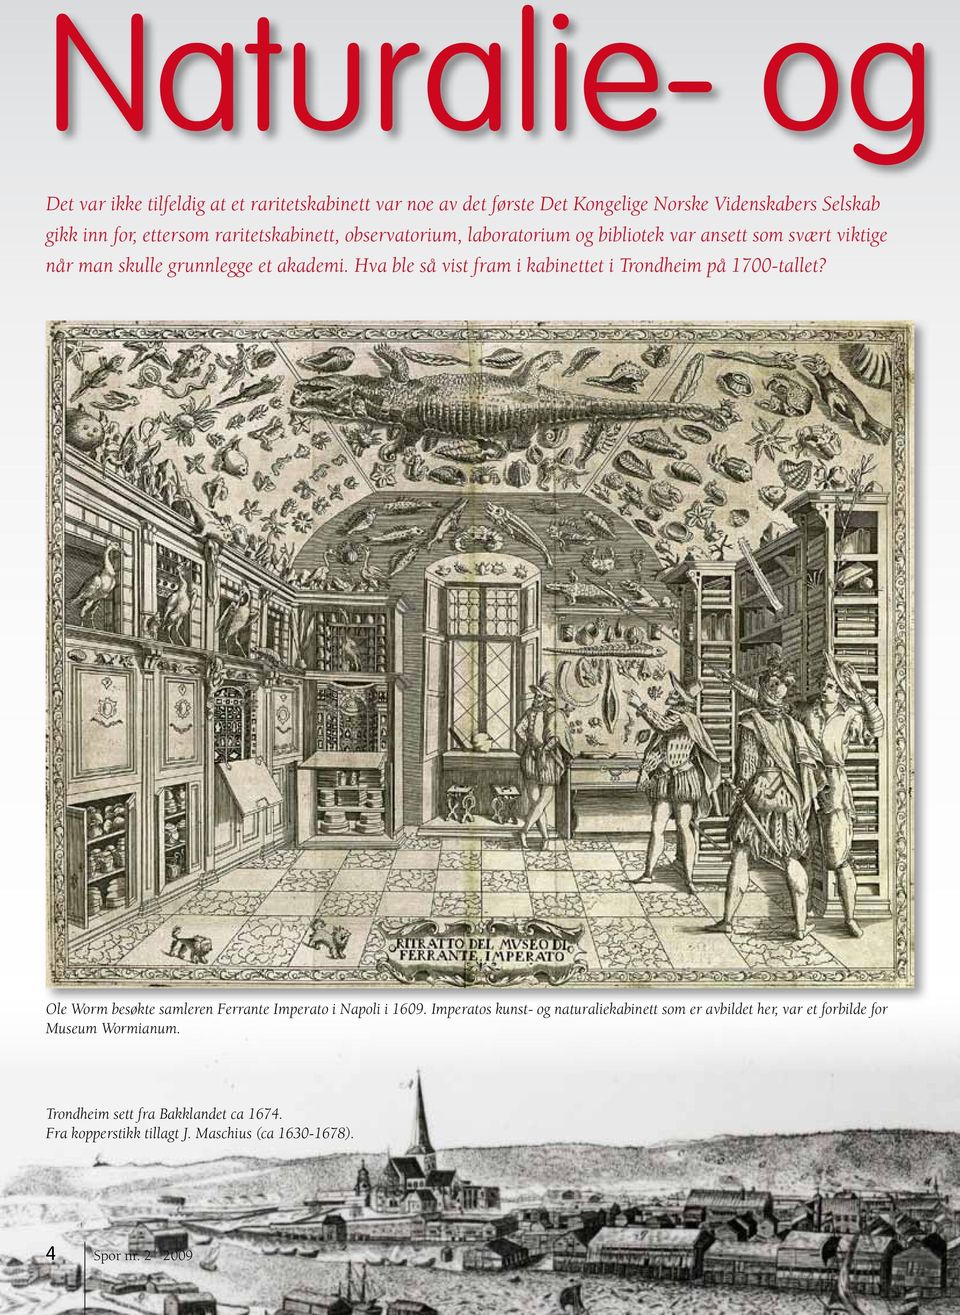 Hva ble så vist fram i kabinettet i Trondheim på 1700-tallet? Ole Worm besøkte samleren Ferrante Imperato i Napoli i 1609.